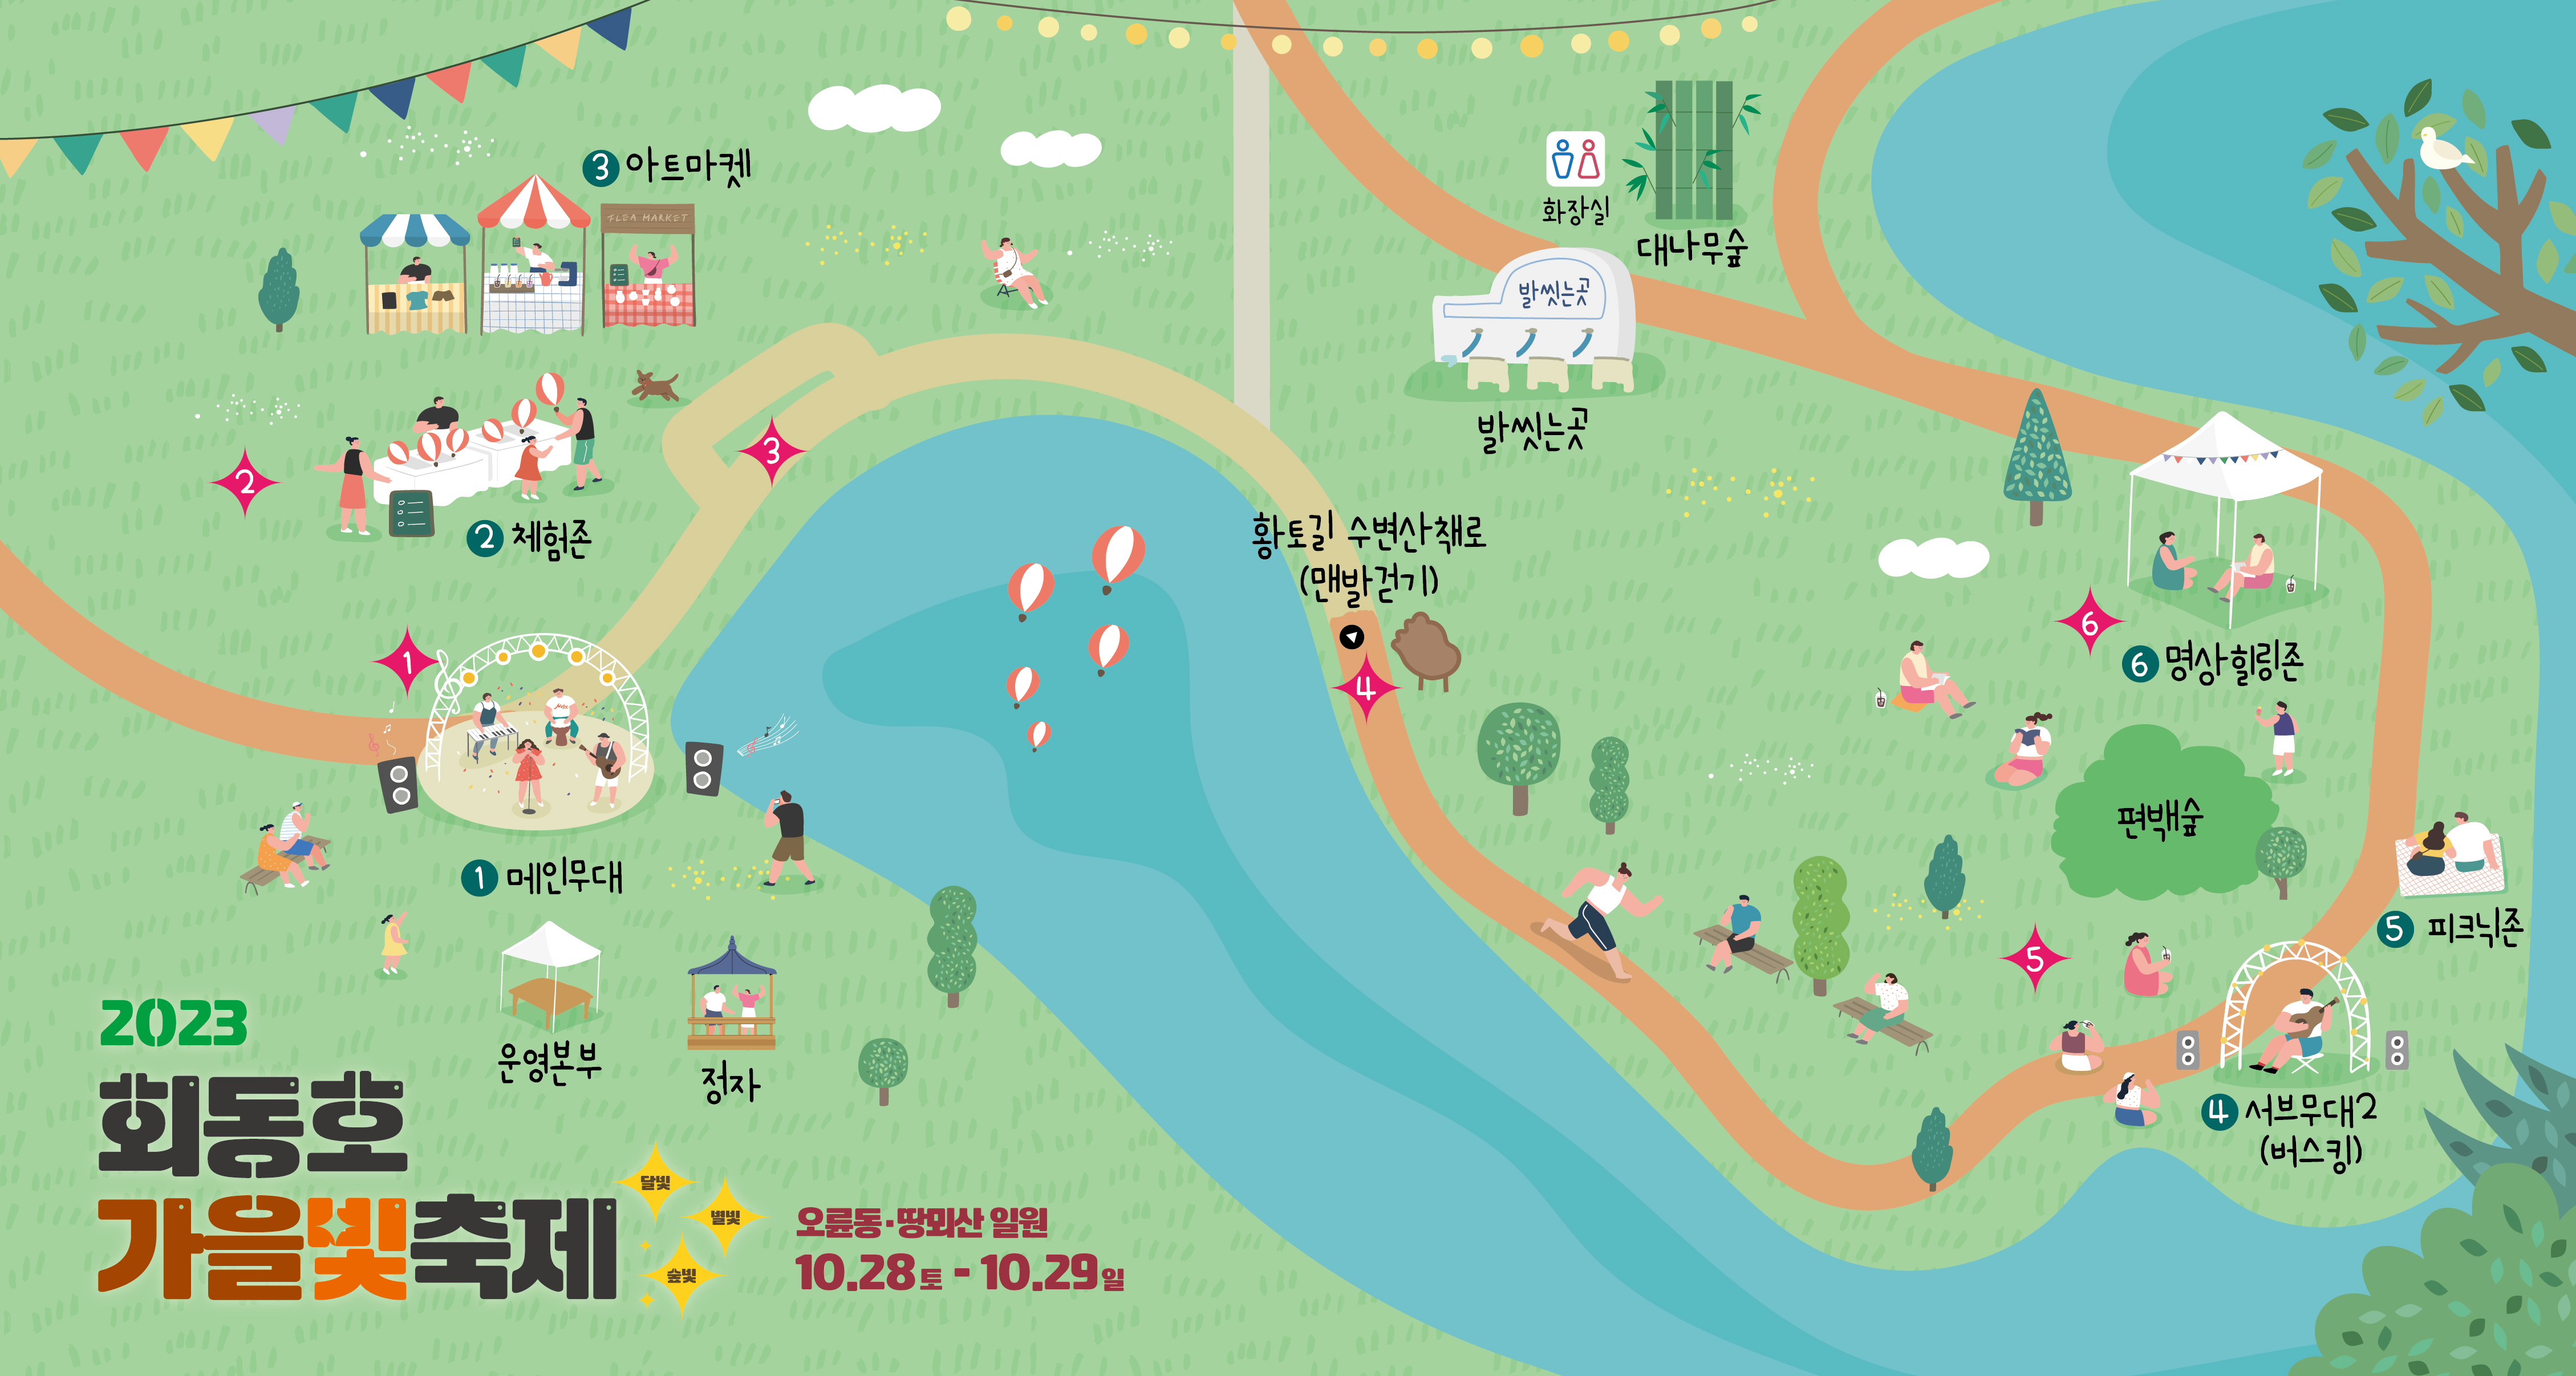 2023 회동호 가을빛(달빛,숲빛,별빛) 축제 개최 게시물의 첨부 이미지 2